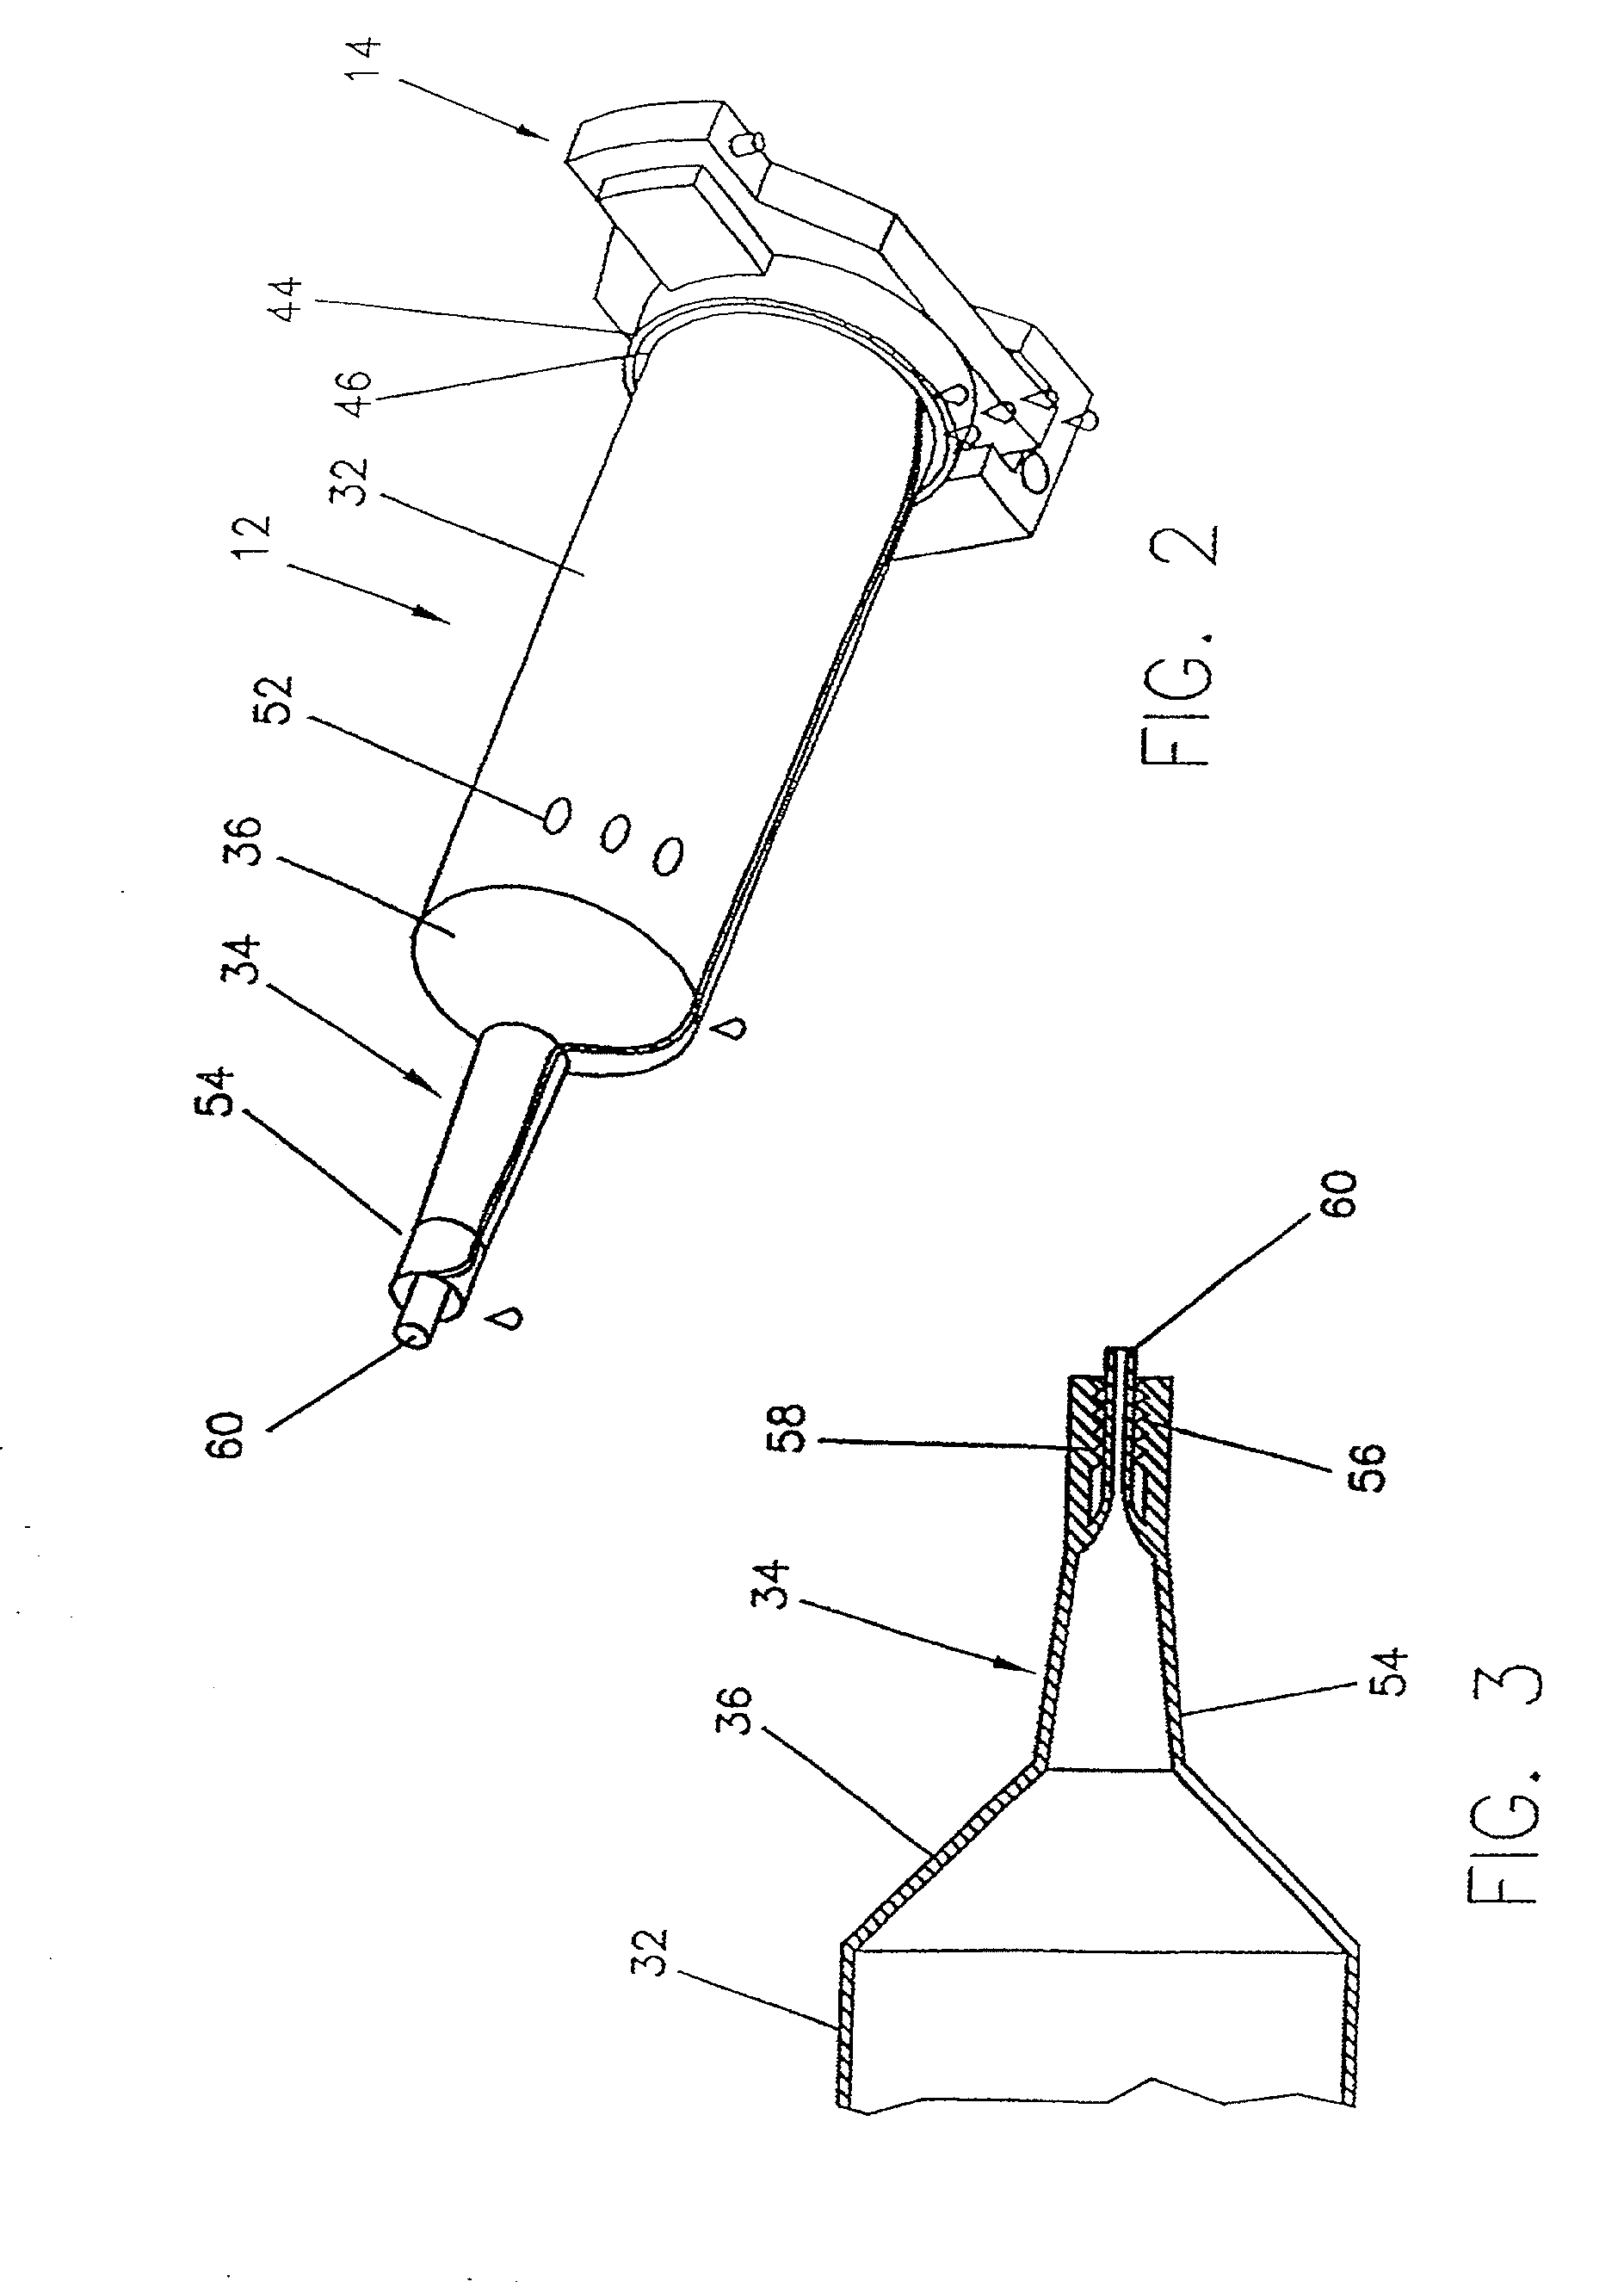 Syringe plunger sensing mechanism for a medical injector